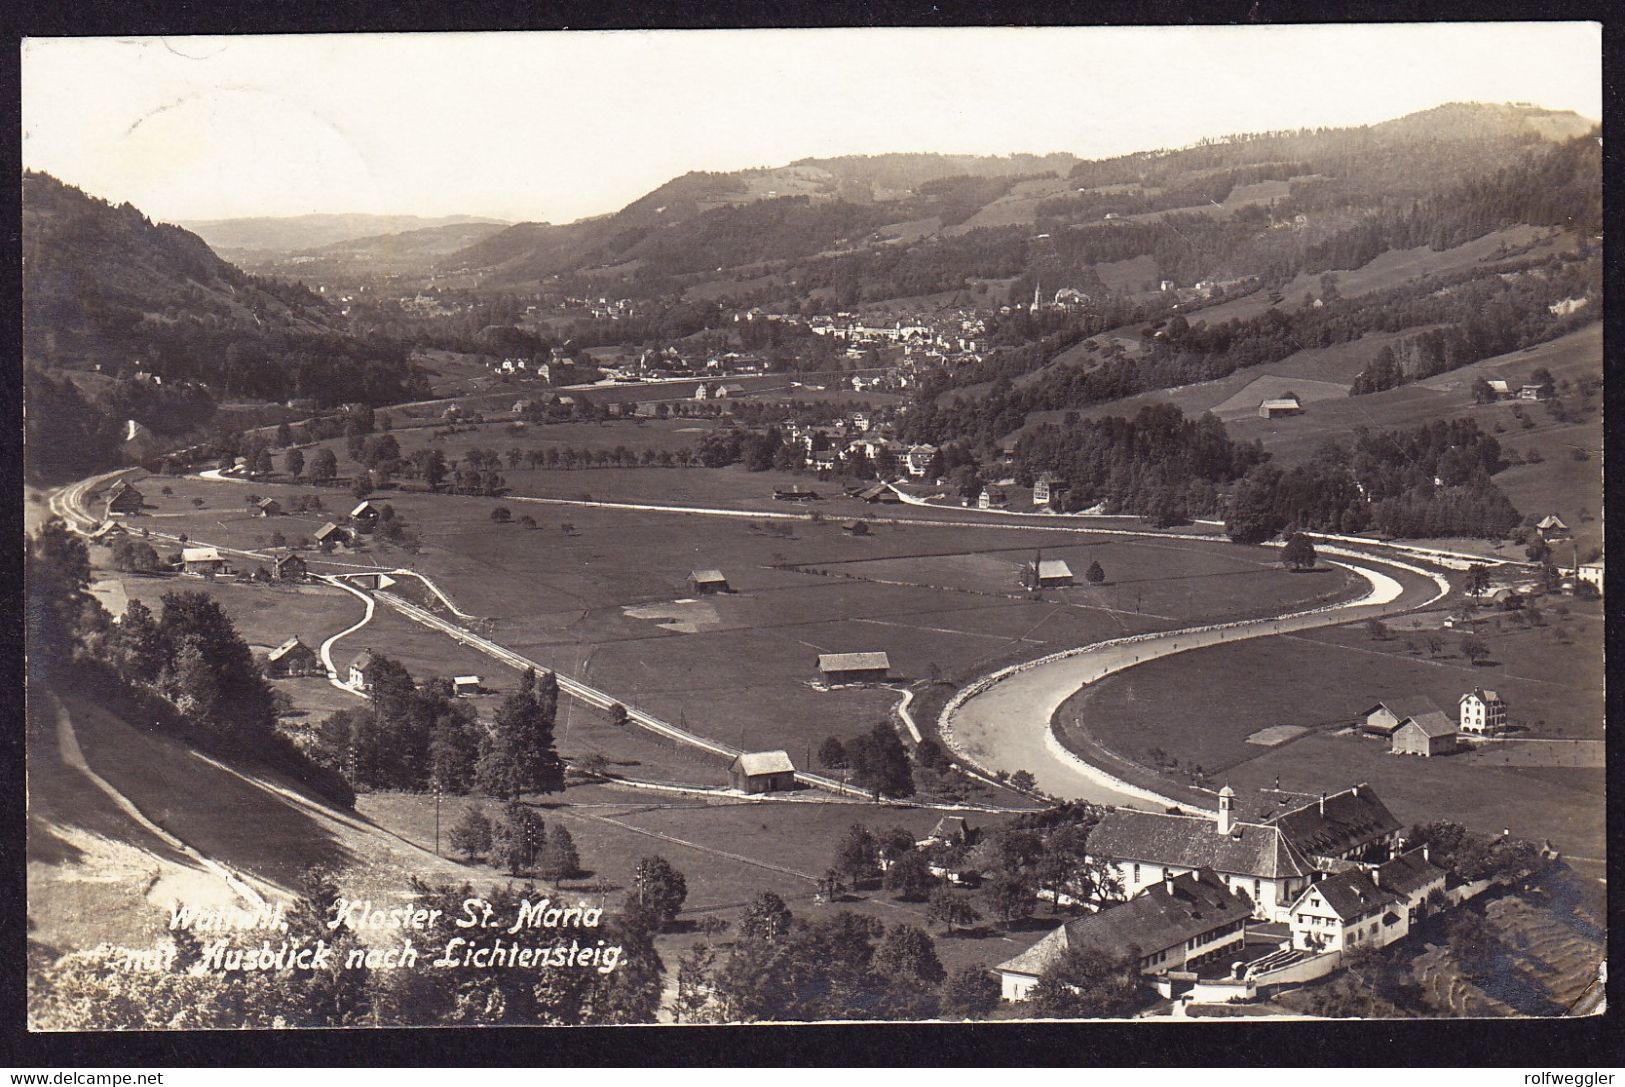 1921 Gelaufene Foto AK Aus Wattwil Mit Ausblick Nach Lichtensteig. - Lichtensteig